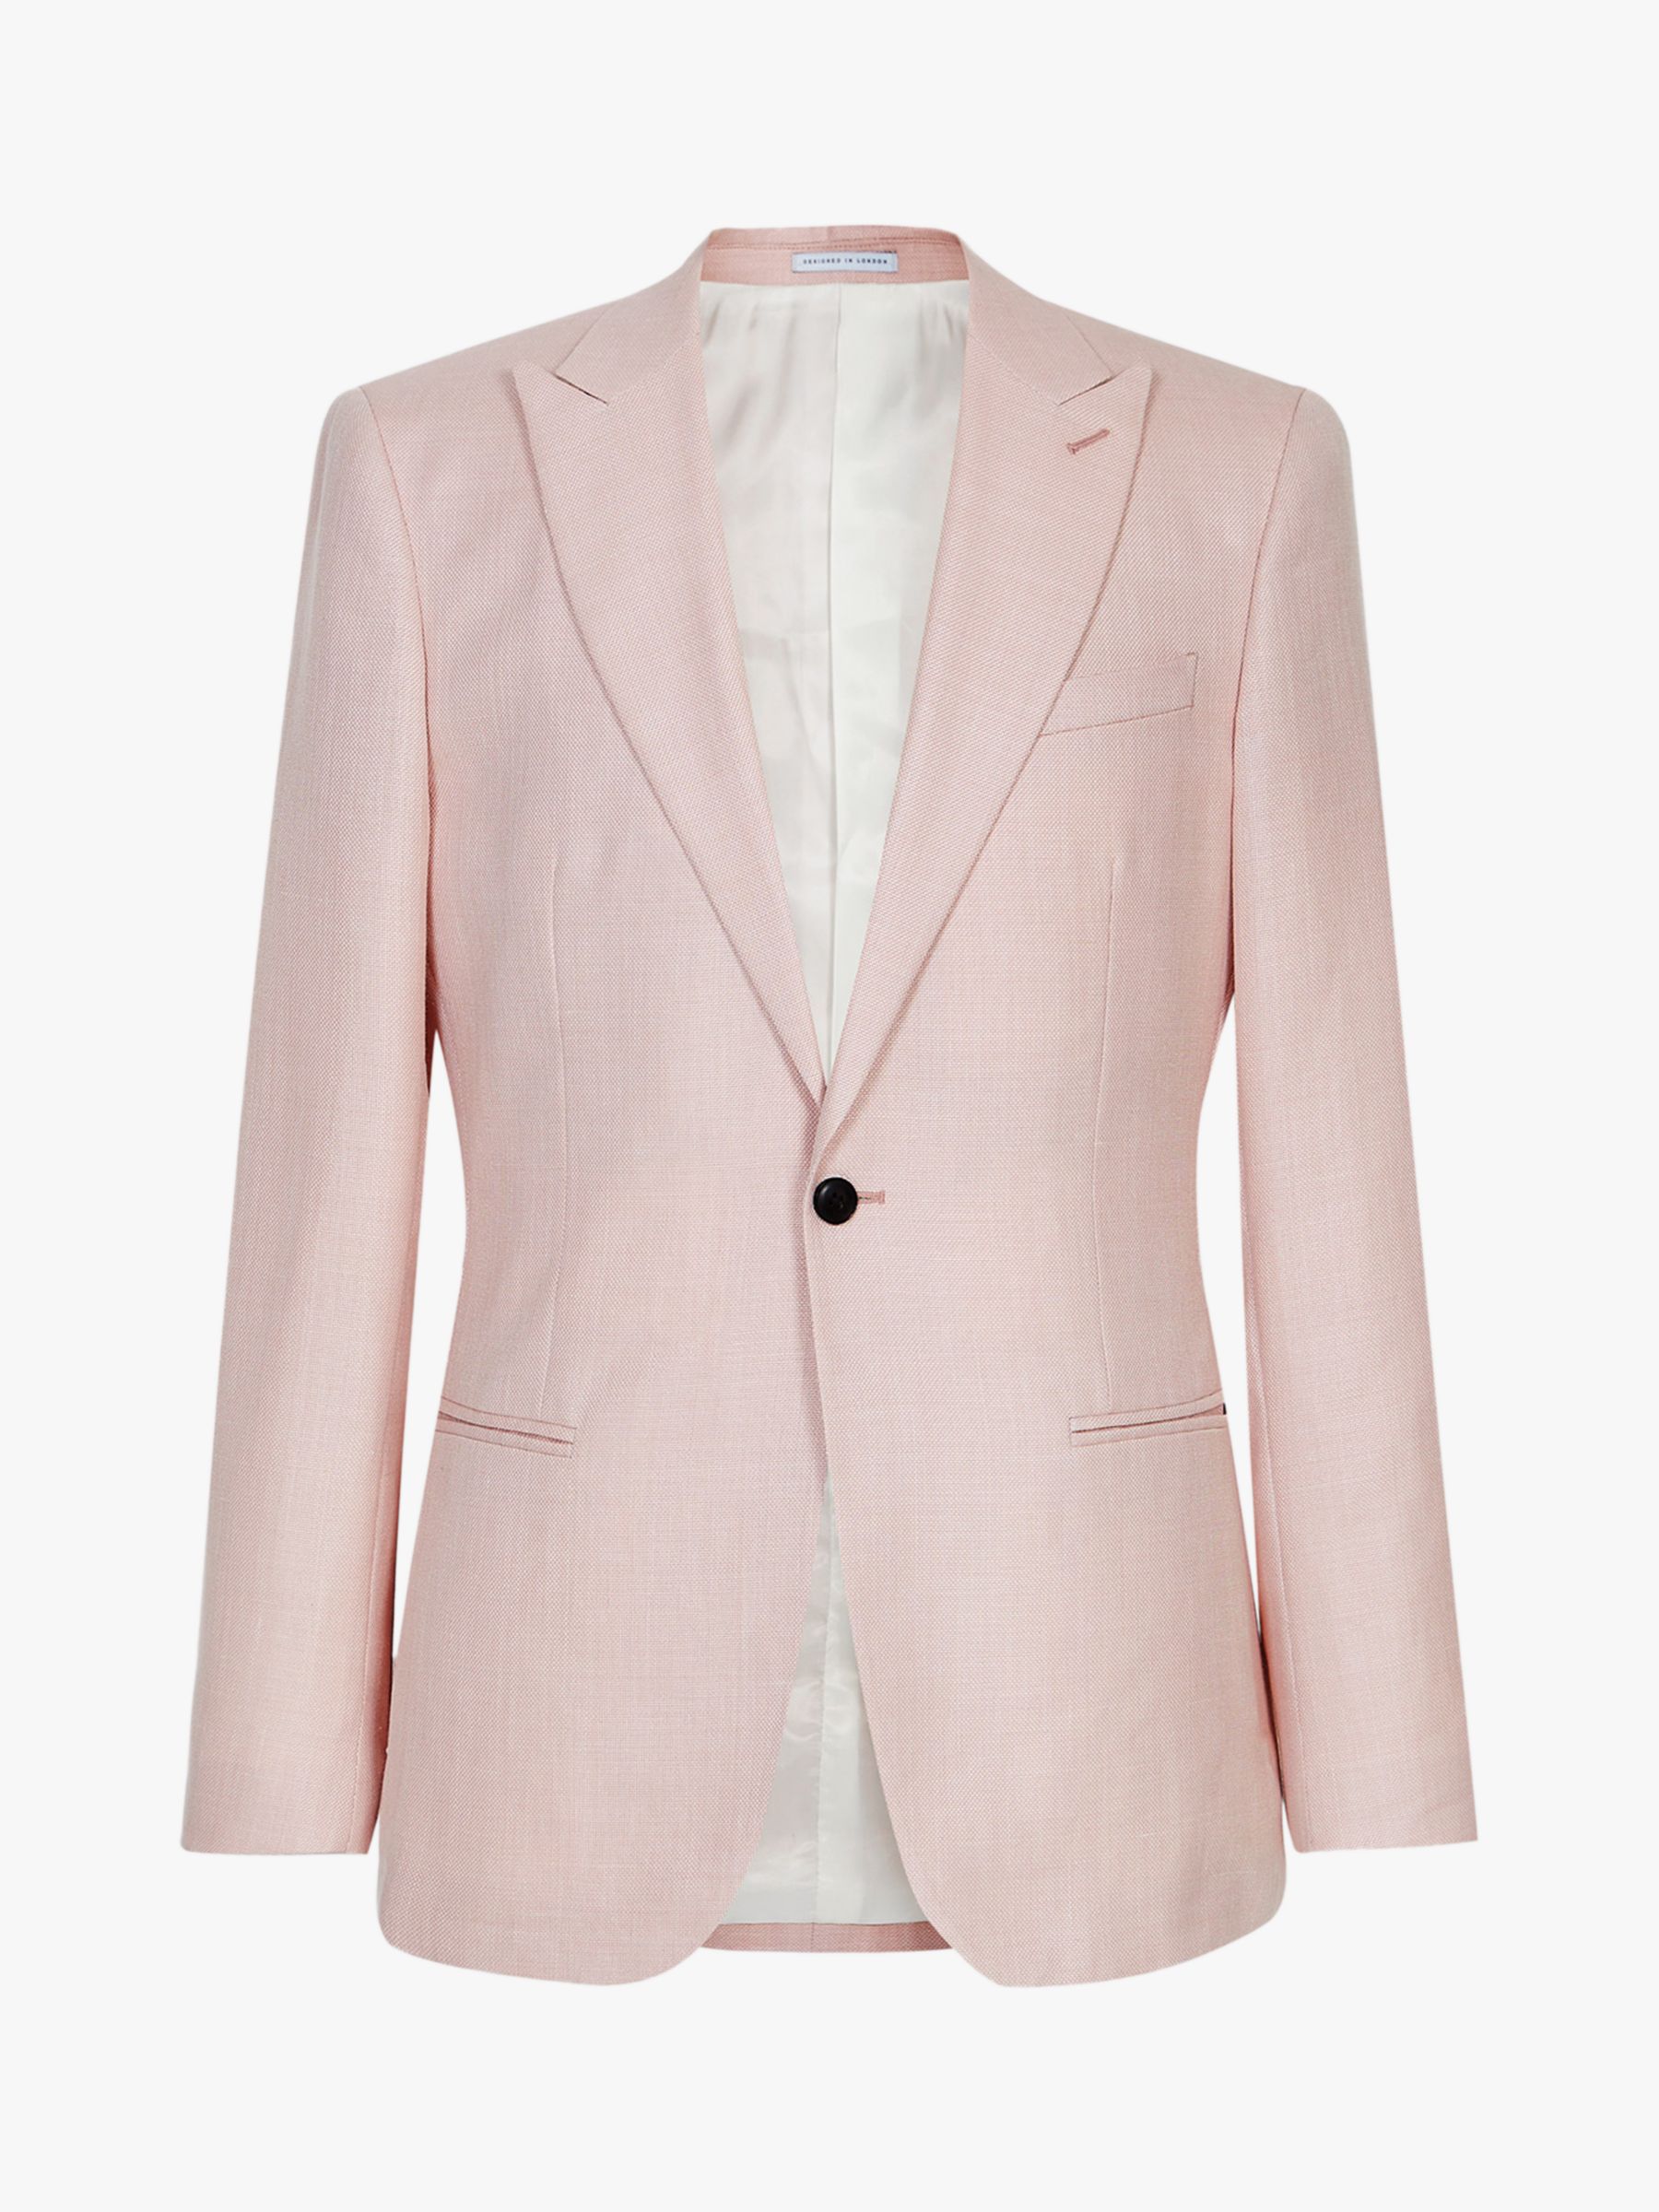 Reiss Melody Peak Lapel Slim Fit Suit Jacket, Soft Pink, 40R